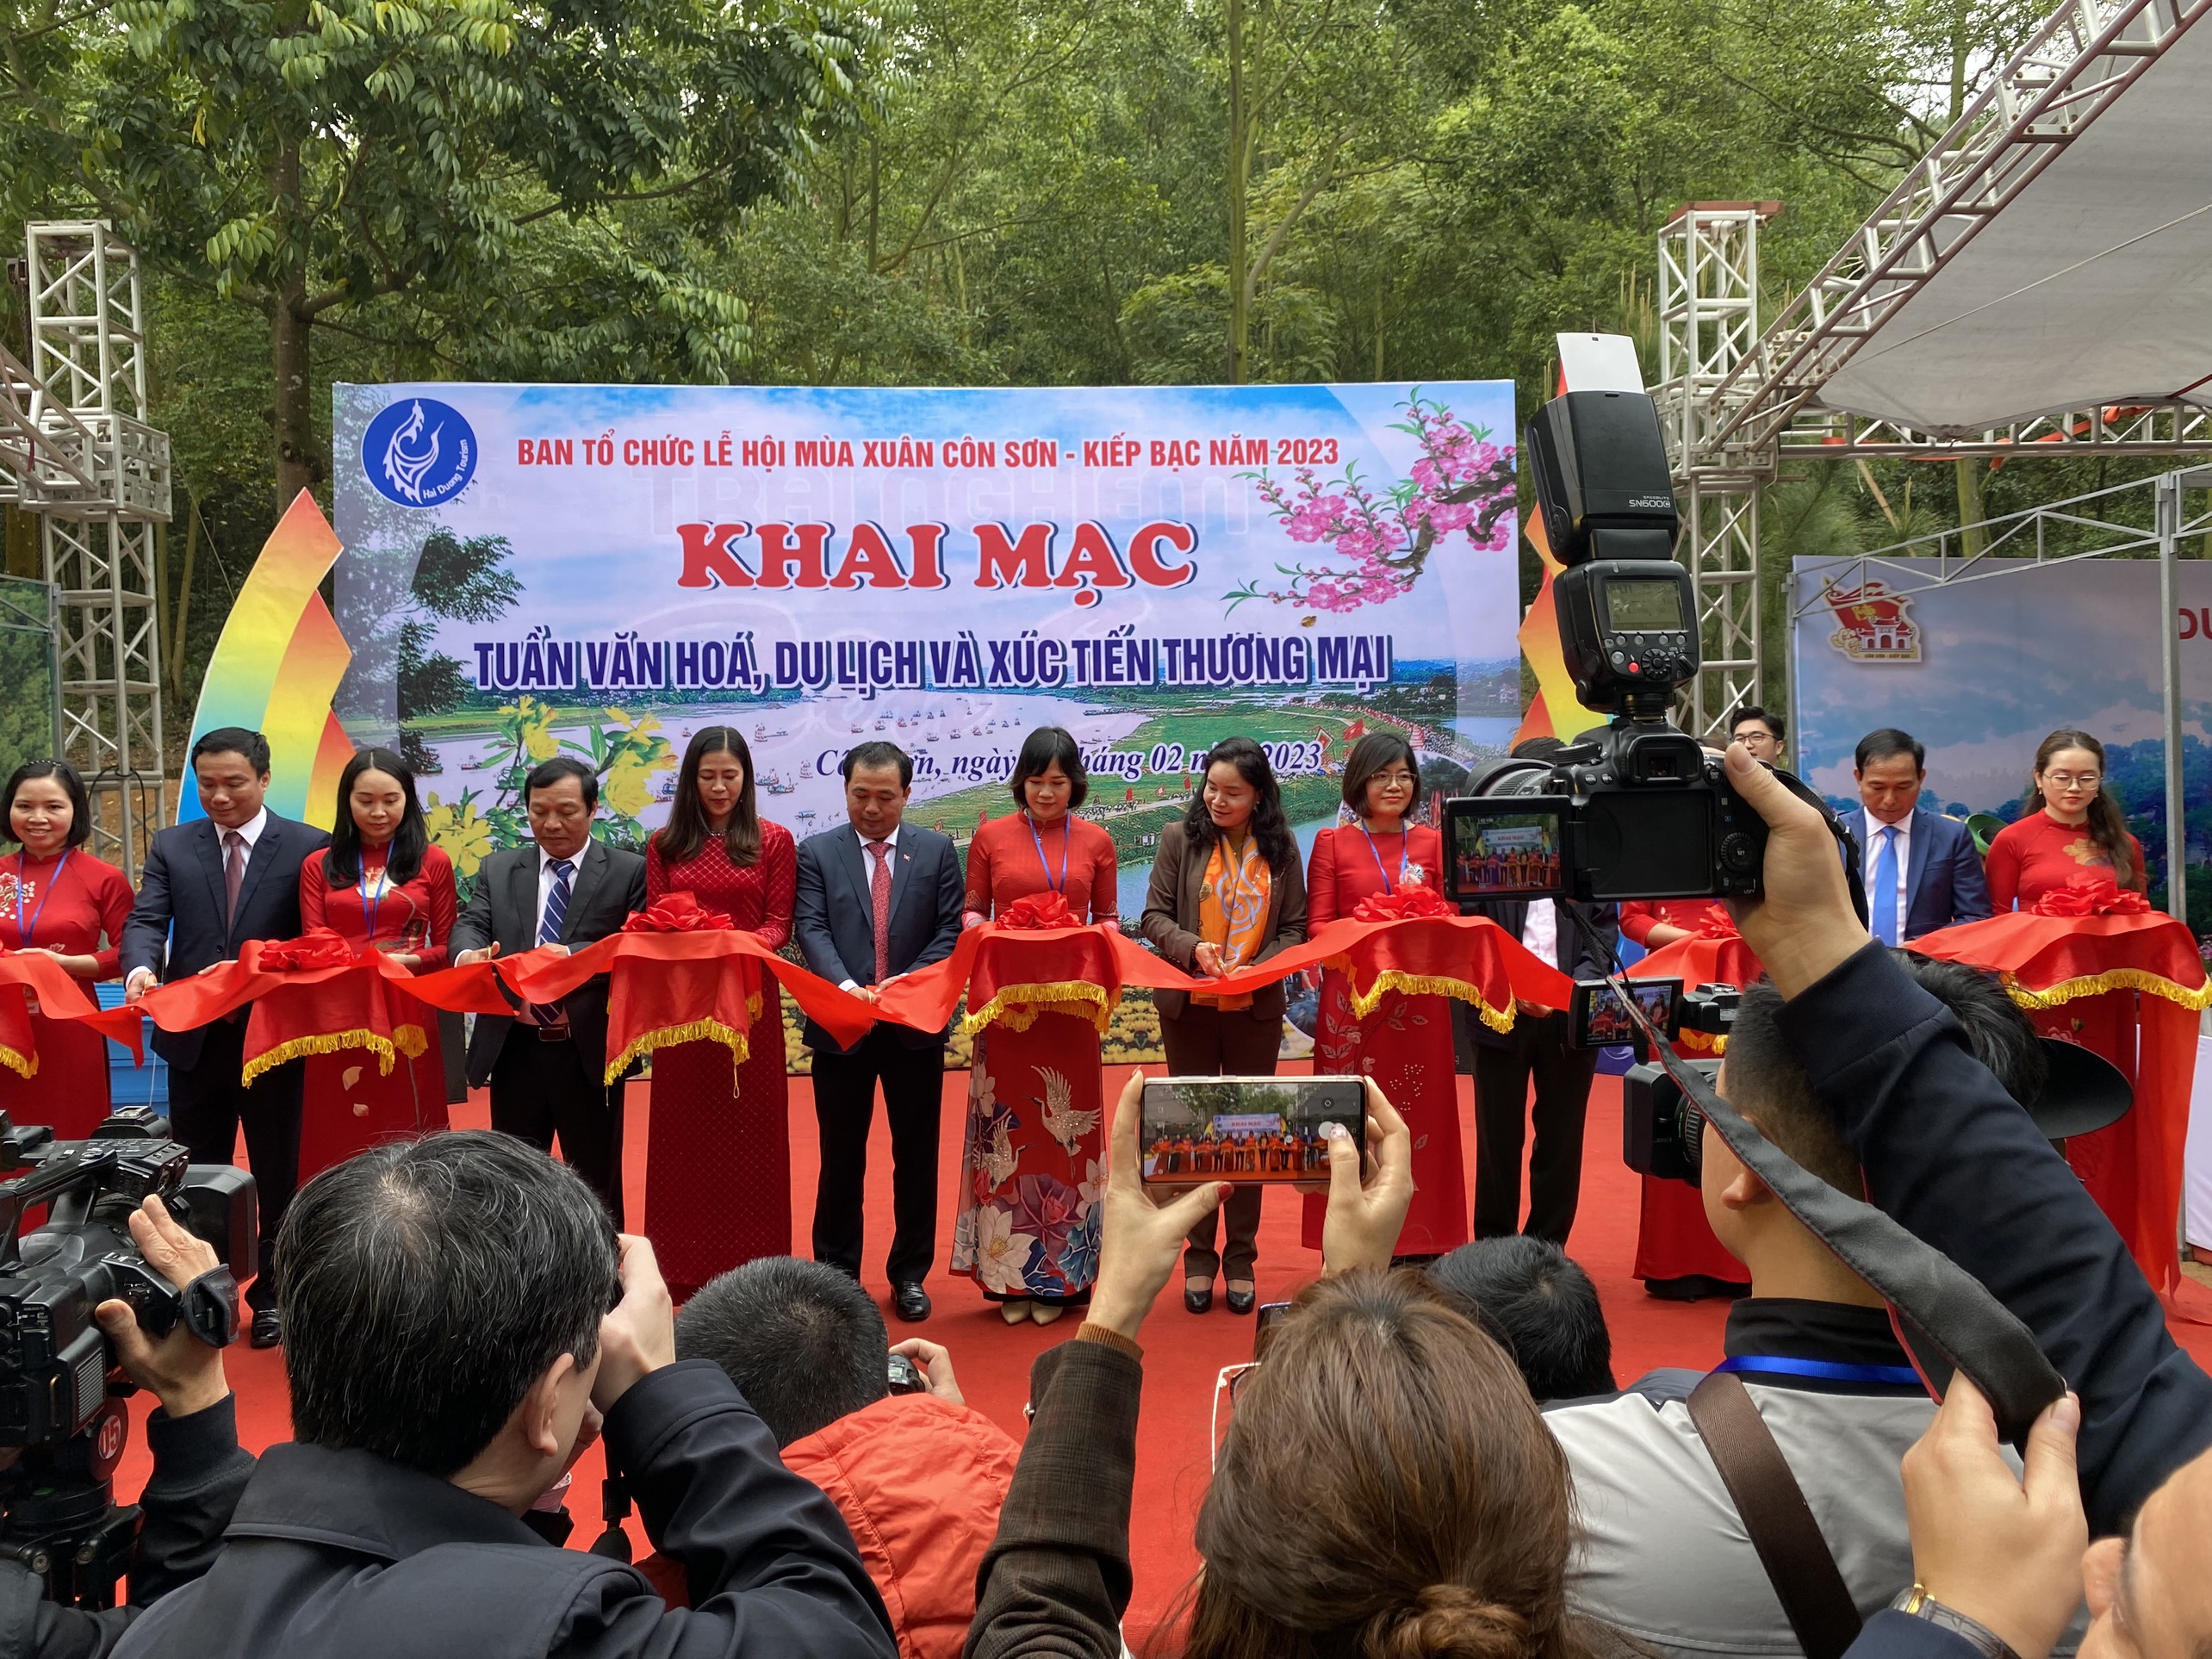 Lần đầu tiên trong khuôn khổ lễ hội Côn Sơn - Kiếp Bạc tổ chức chương trình Tuần văn hóa, du lịch và xúc tiến thương mại